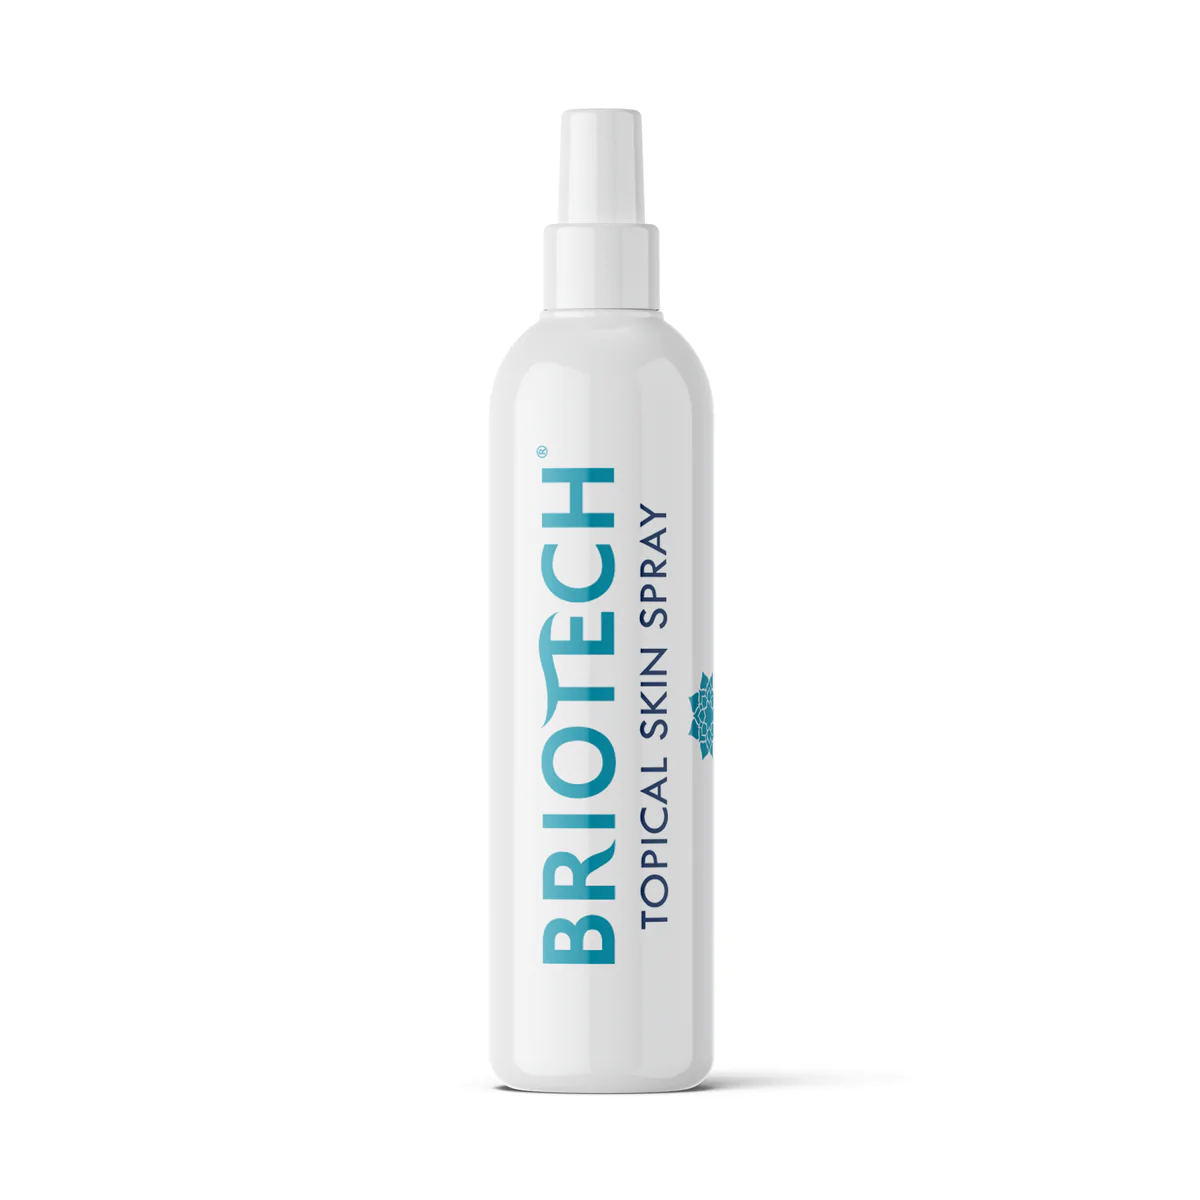 Briotech spray bottle